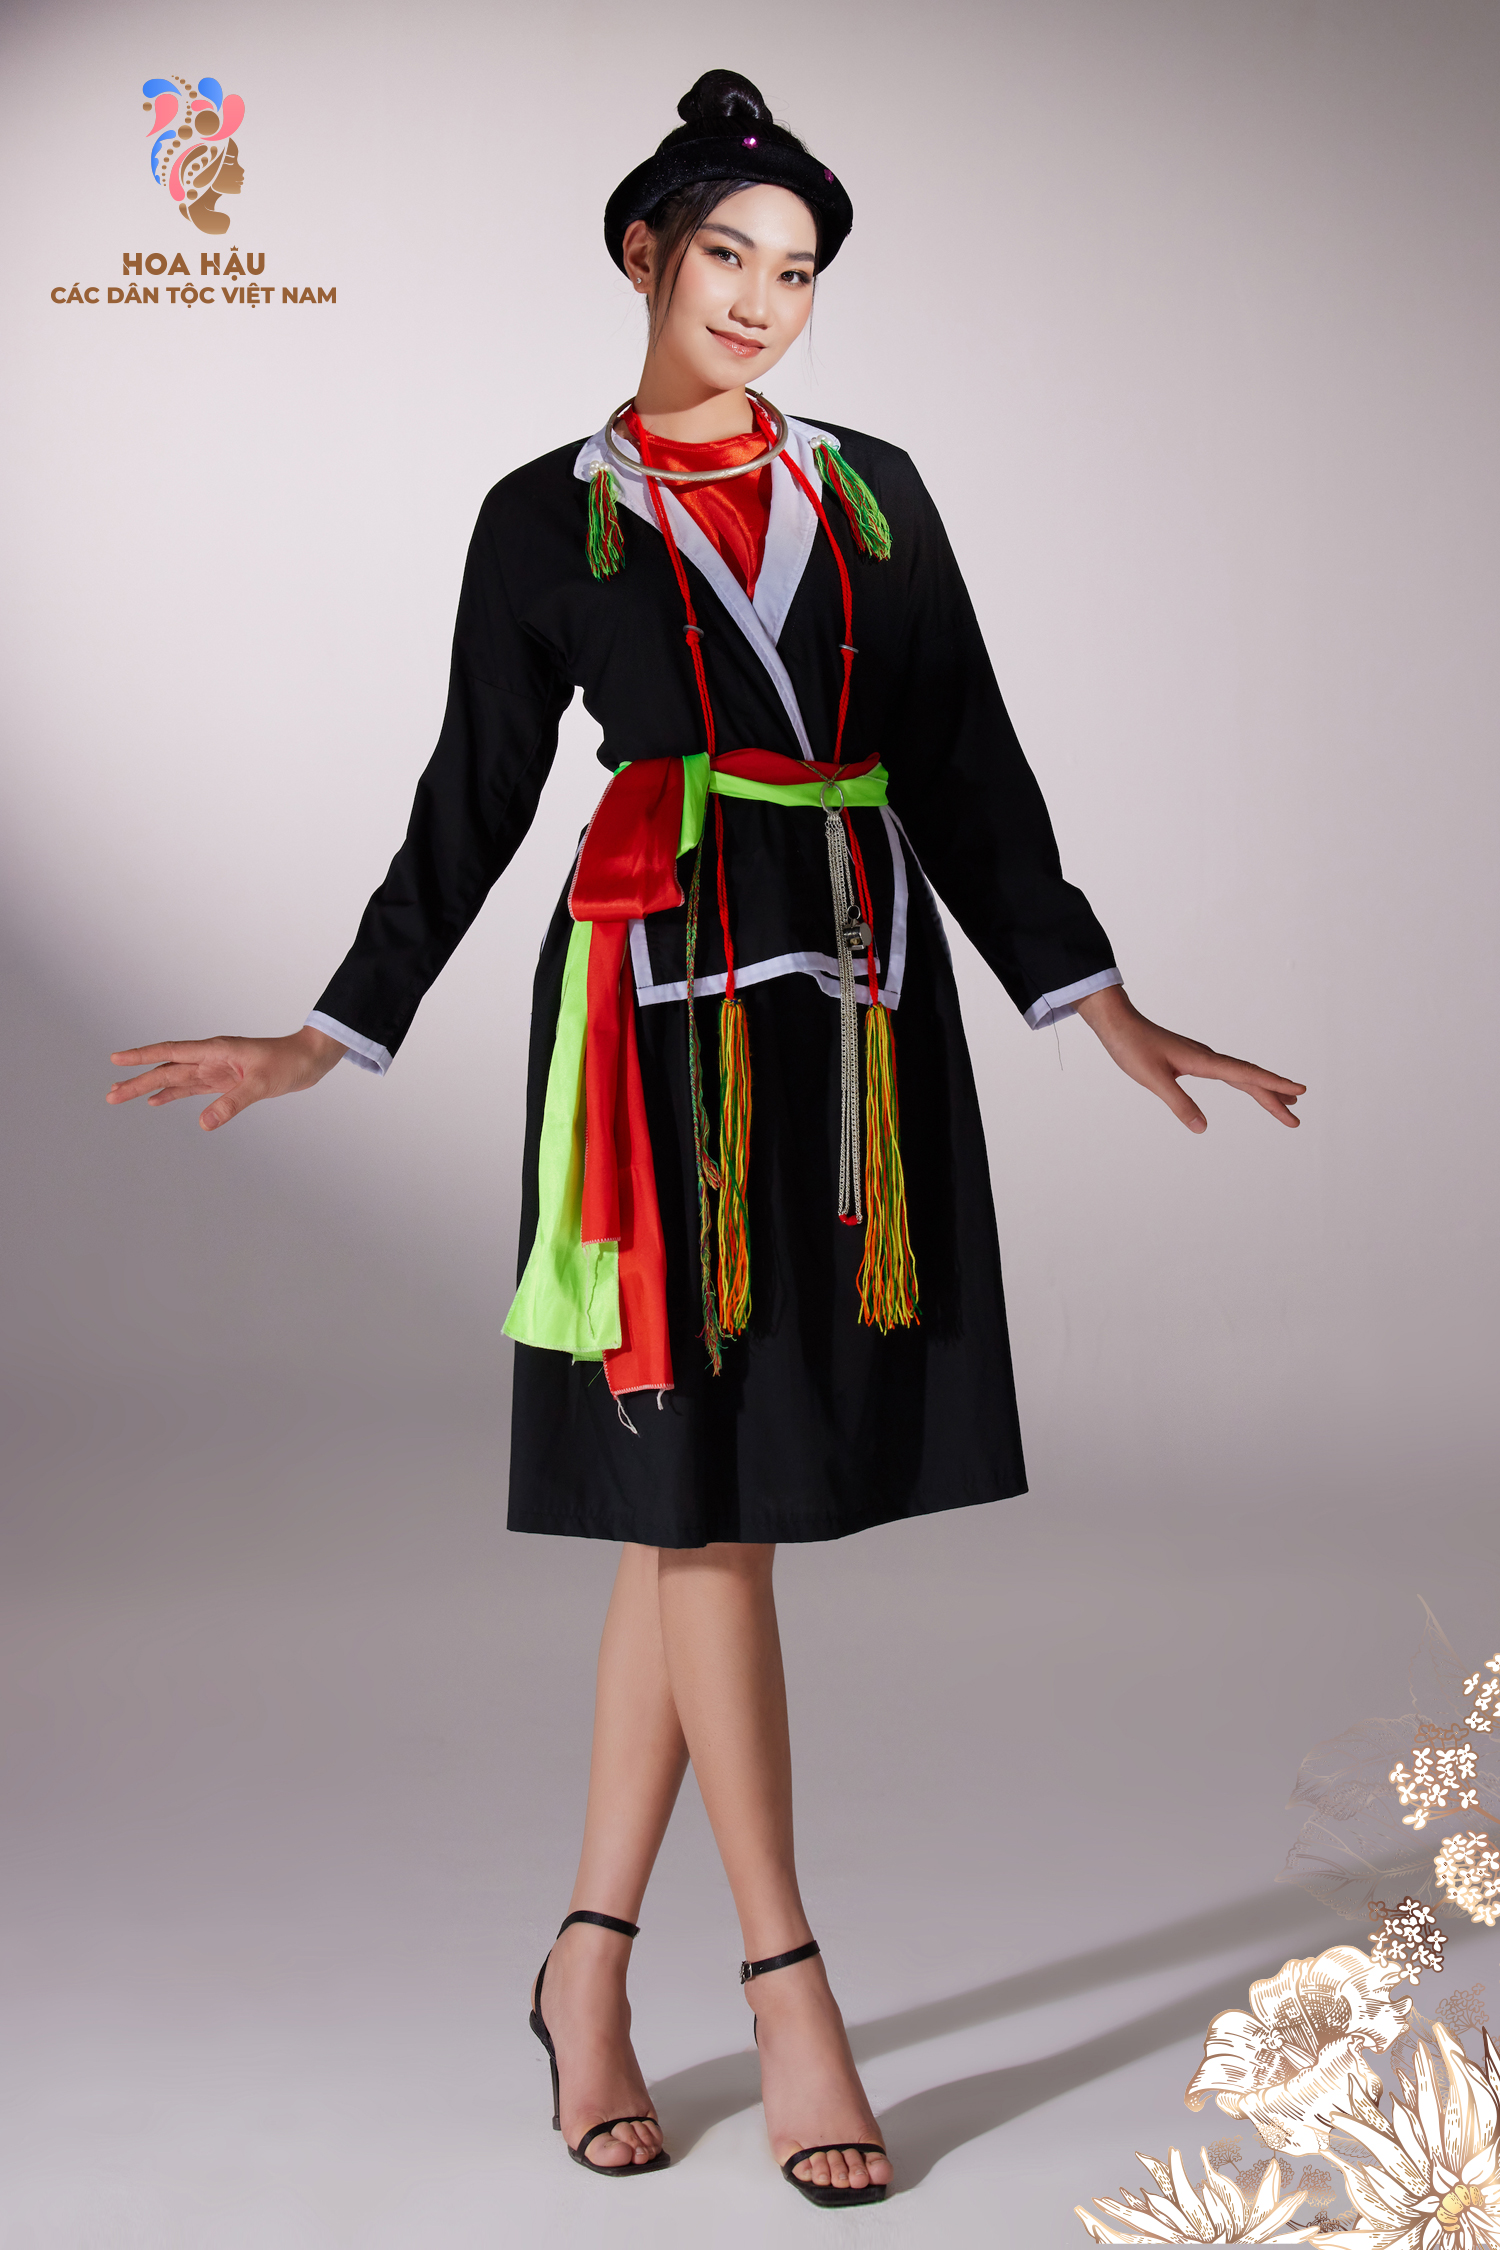 Không chỉ có một, mà đến 11 dân tộc được lồng ghép vào những bộ trang phục đầy sắc màu và đẹp mắt. Hãy cùng chiêm ngưỡng vẻ đẹp độc đáo của từng bộ trang phục, đồng thời khám phá sự đa dạng và phong phú của văn hoá dân tộc Việt Nam.